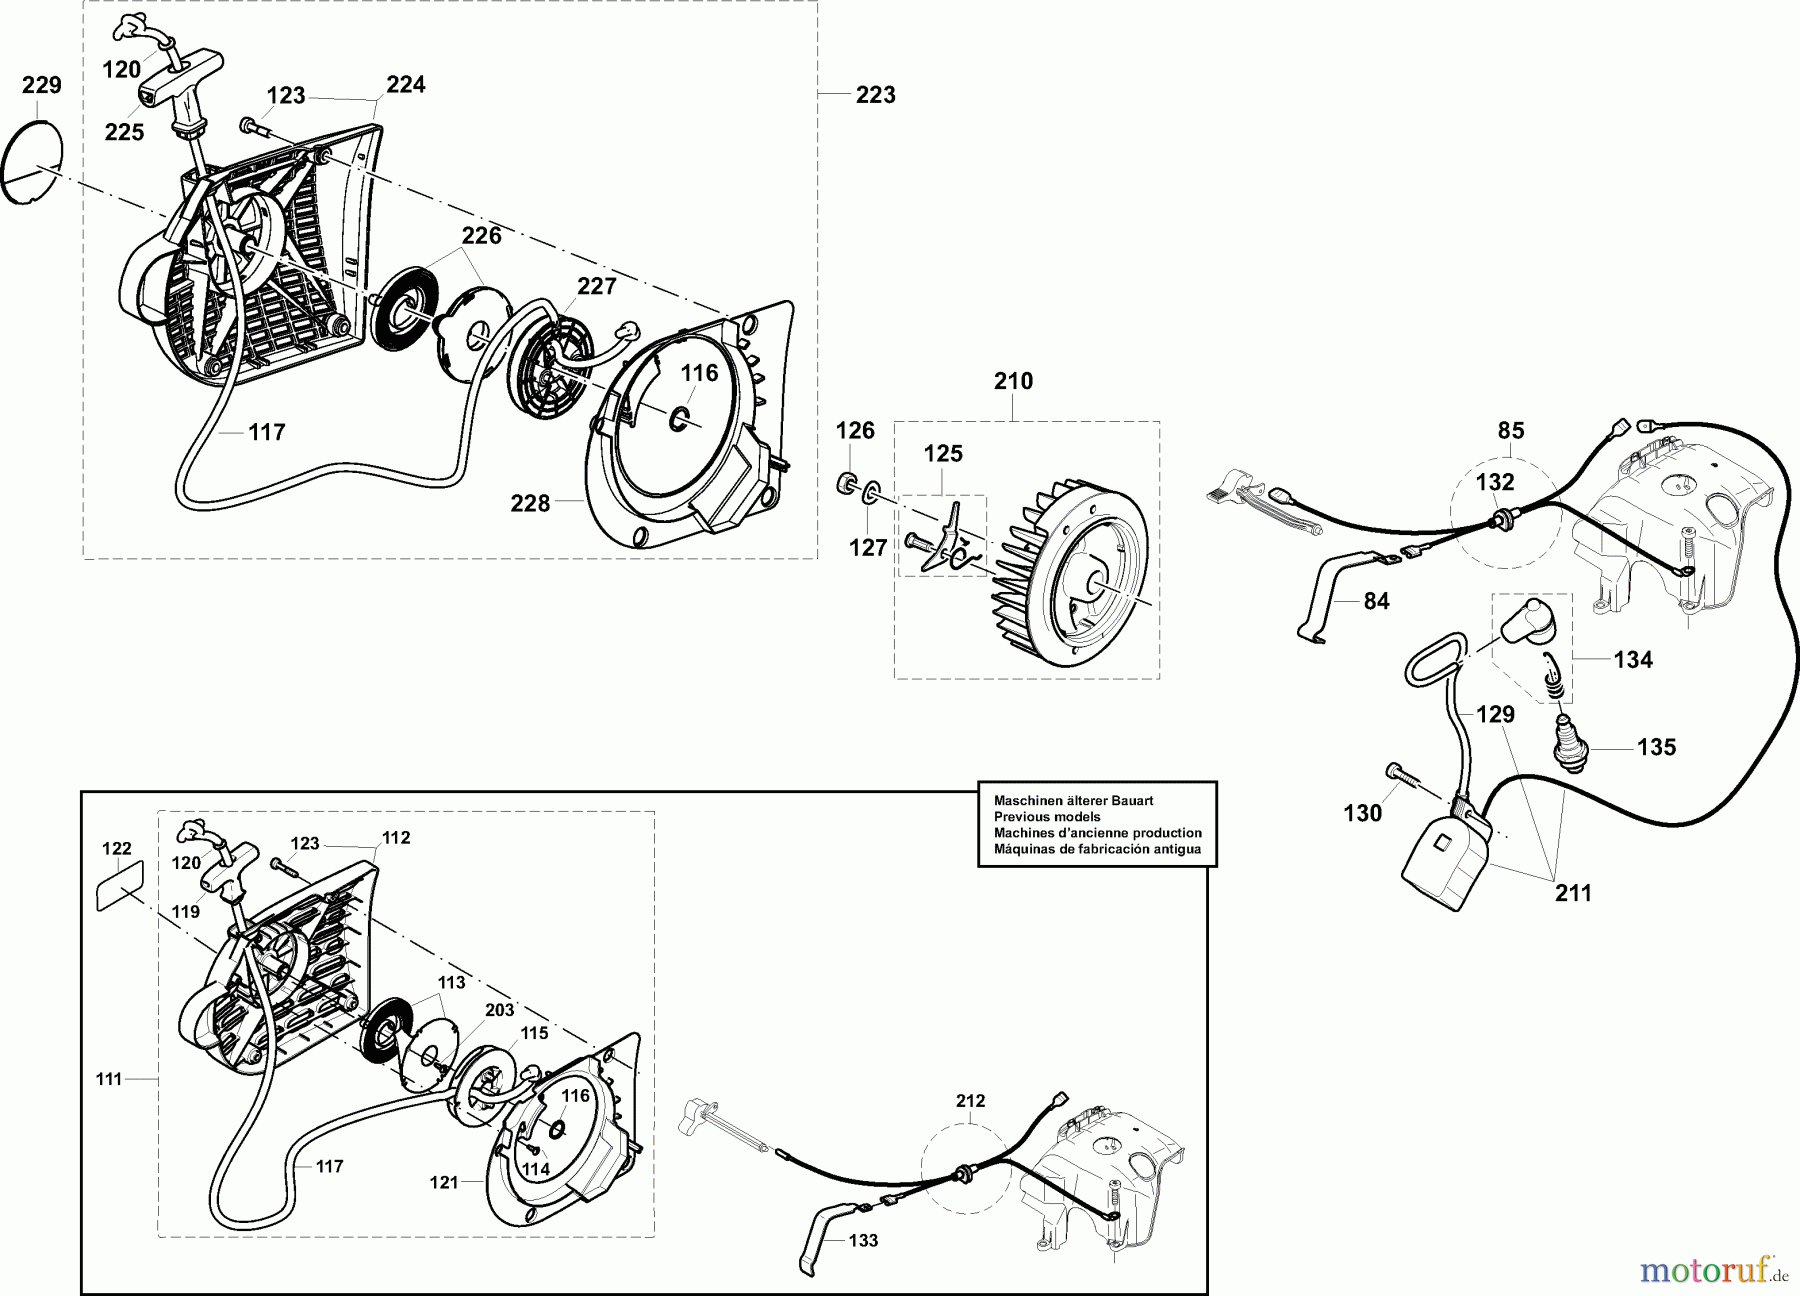  Dolmar Trennschleifer Benzin PC-6412 CD 5  Anwerfvorrichtung, Magnetzünder